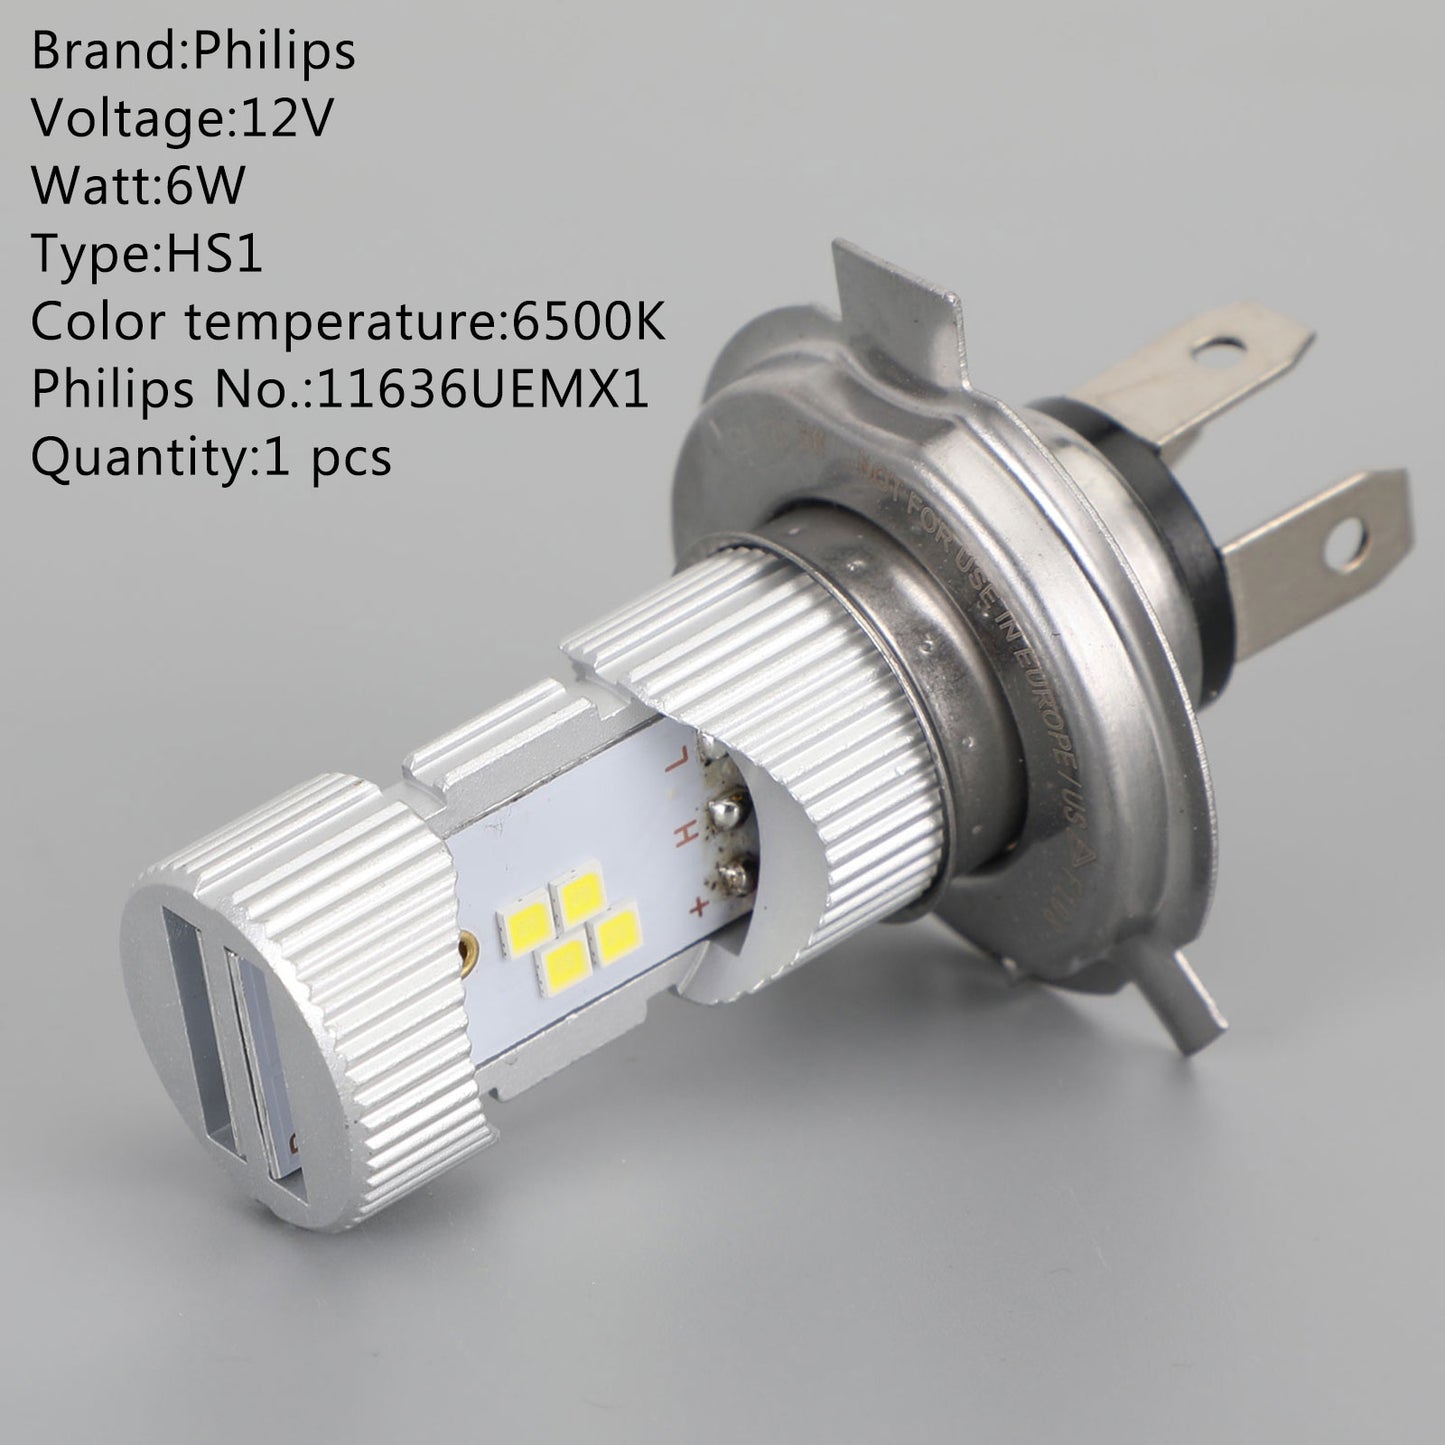 Für Philips HS1 Ultinon Essential Moto +100% Brighter 6500K White Light